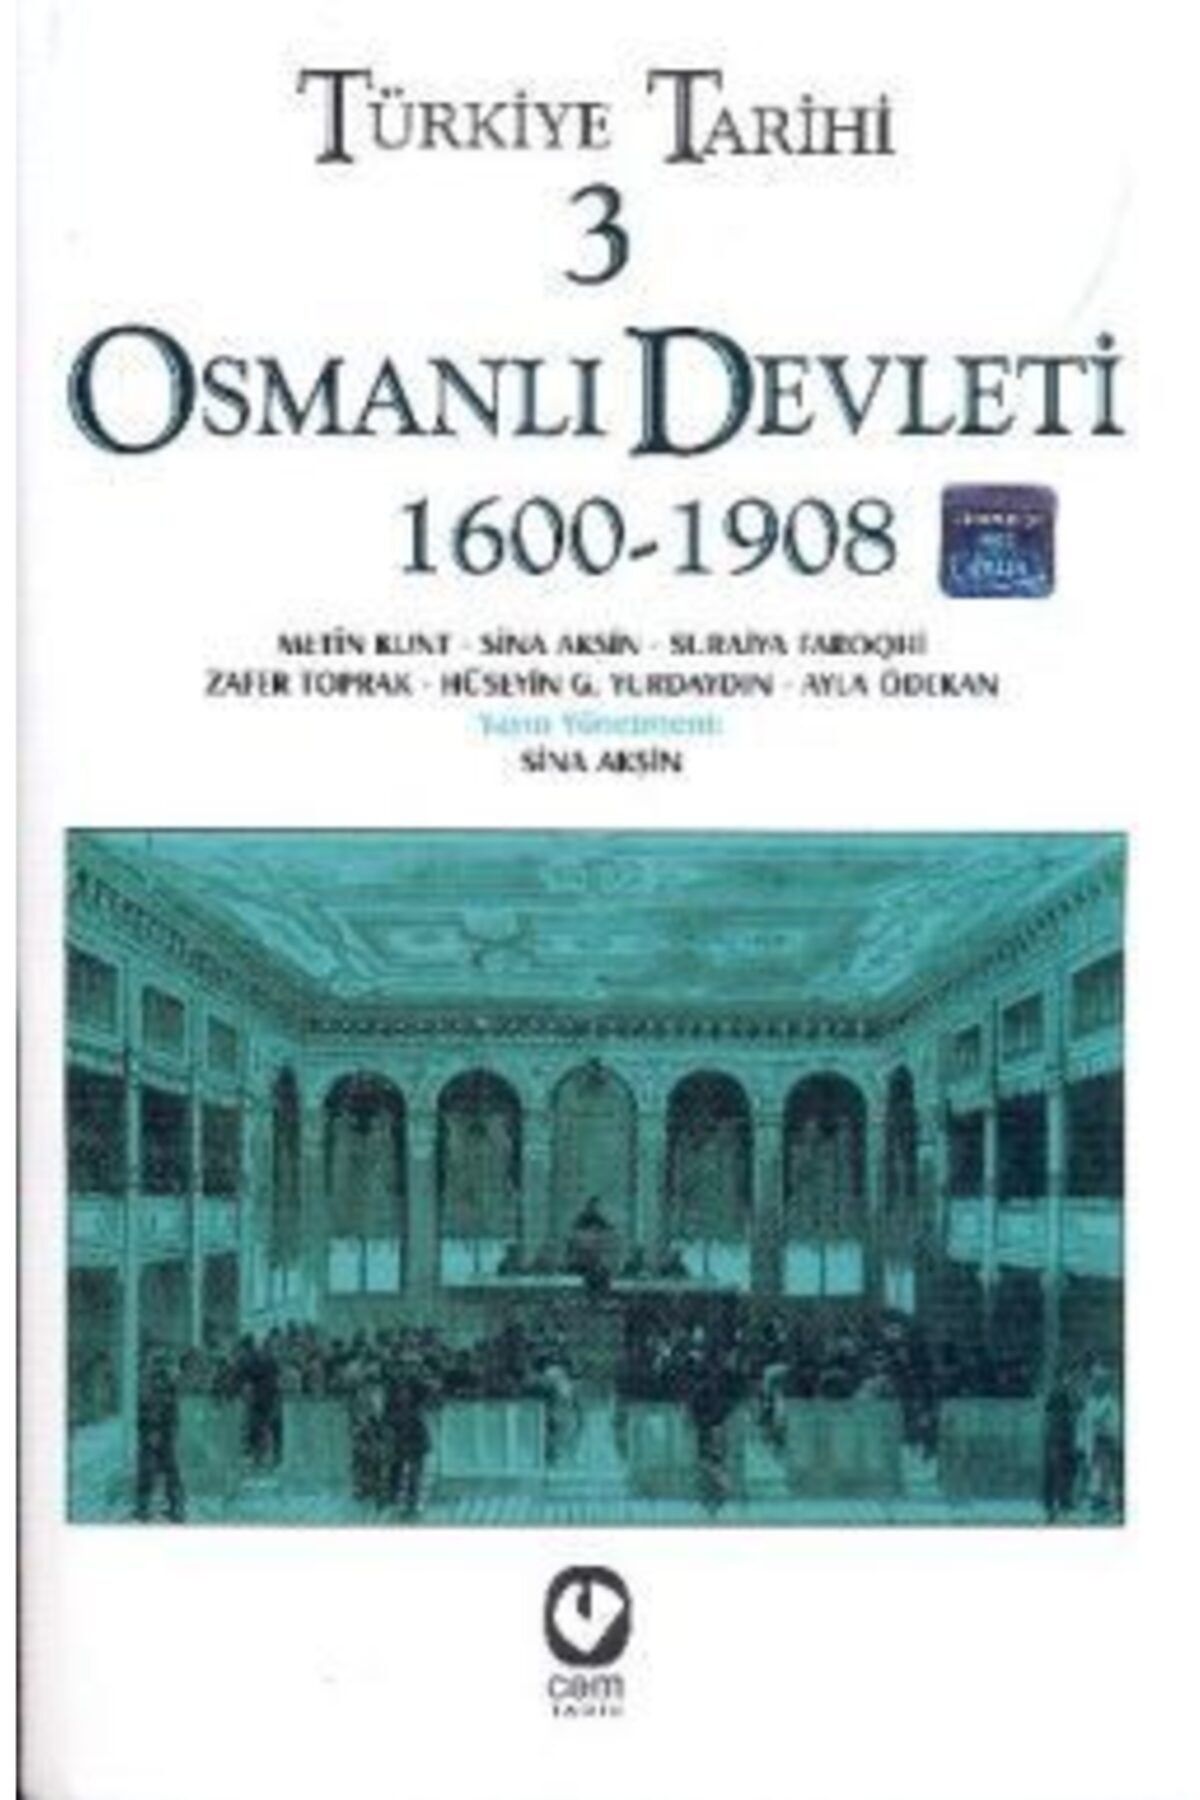 Genç Timaş Türkiye Tarihi 3 Osmanlı Devleti 1600-1908 kitabı - Sina Akşin - Cem Yayınevi